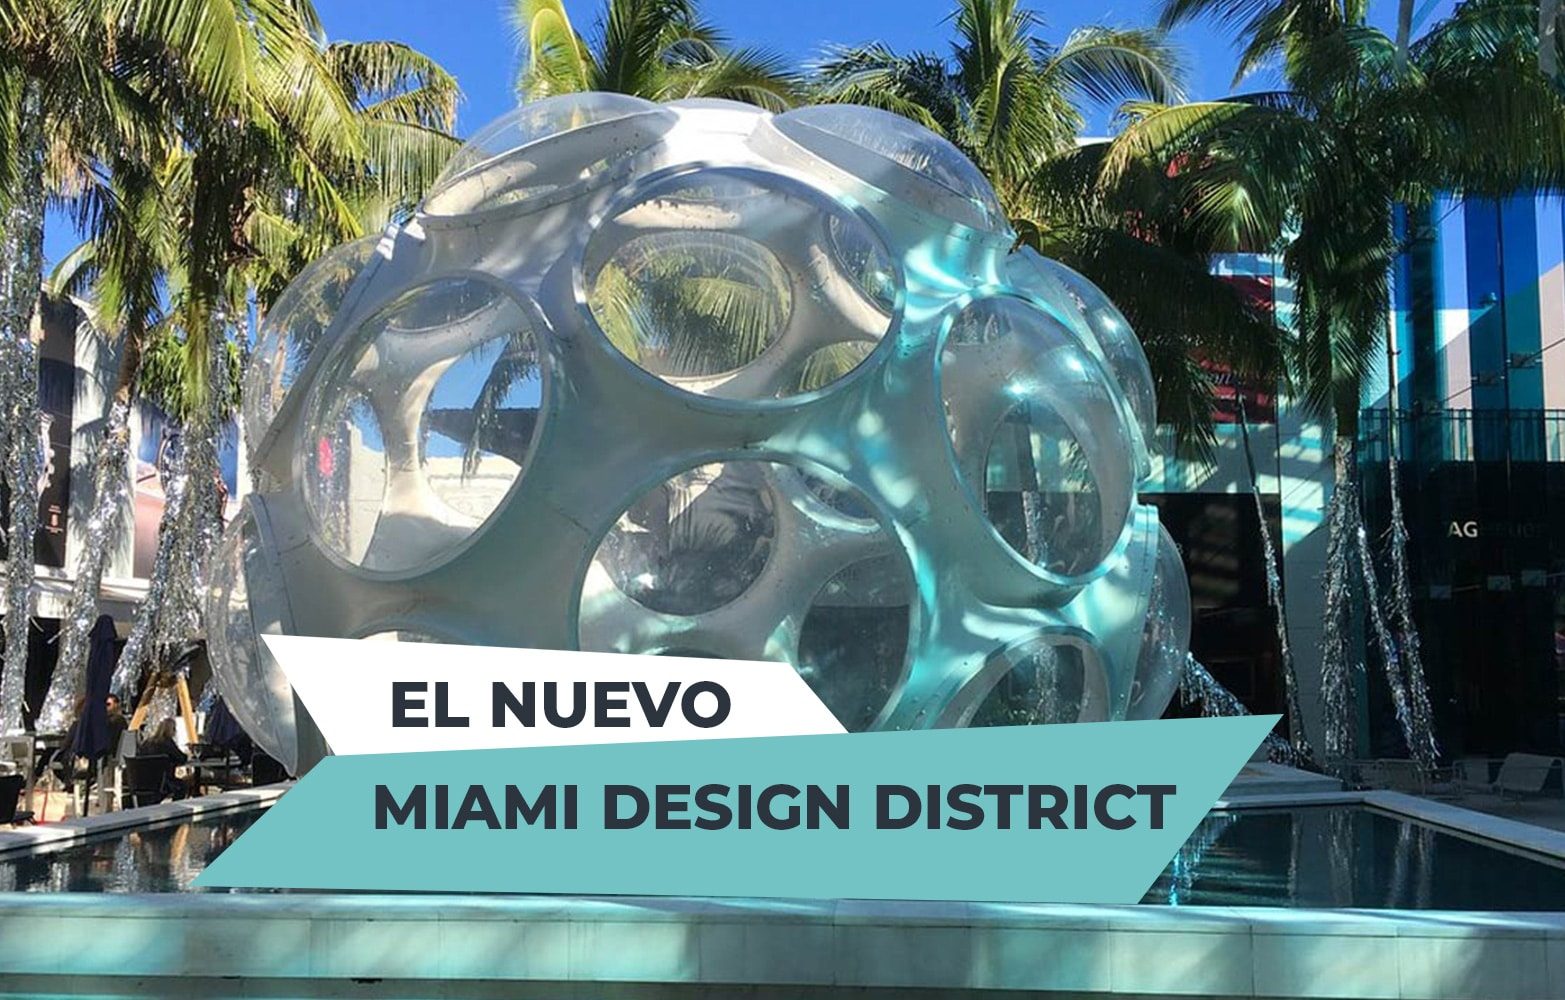 El nuevo miami design district